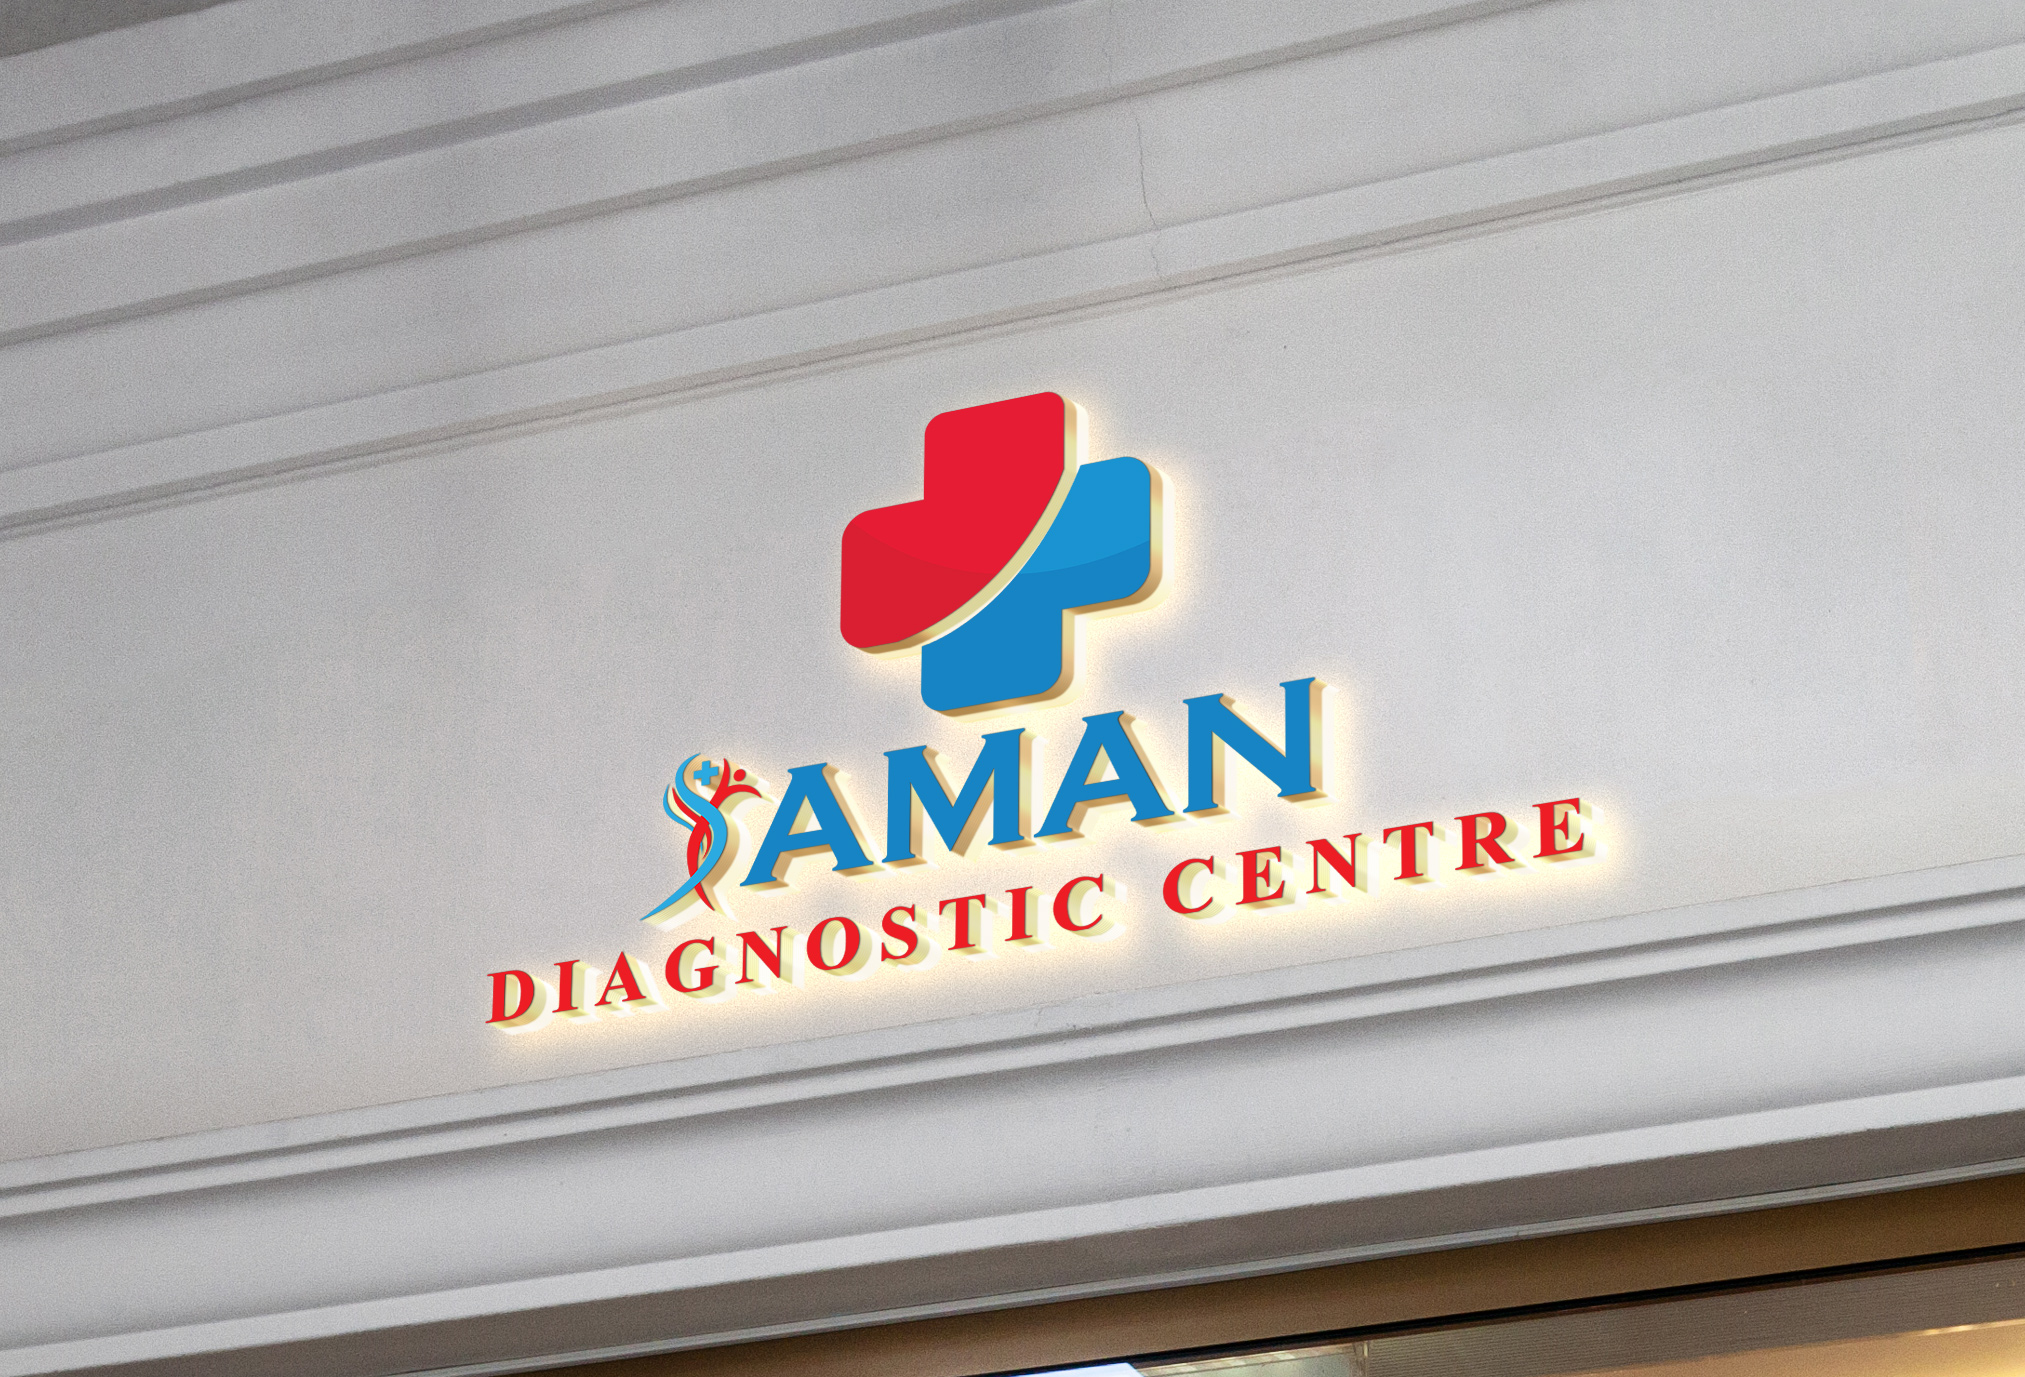 AMAN DIAGNOSTIC CENTRE|Hospitals|Medical Services